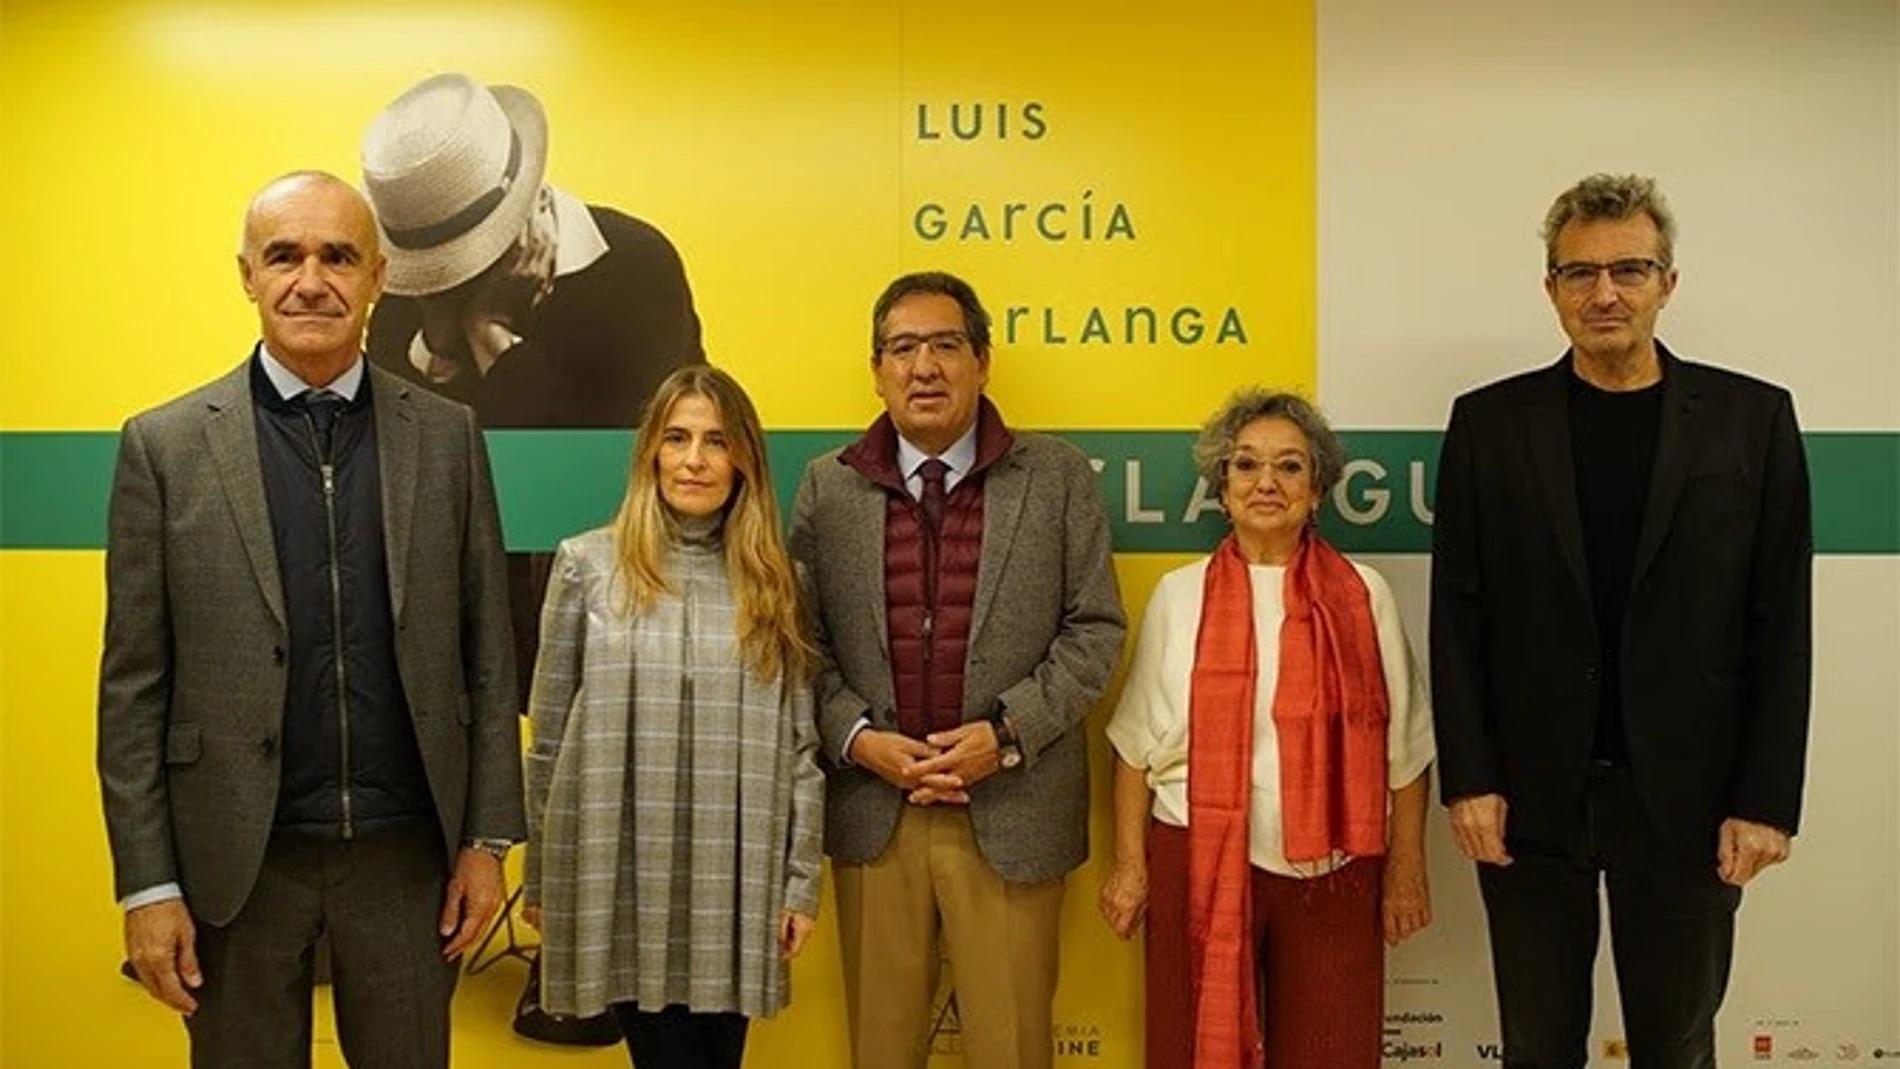 La Fundación Cajasol acogió el miércoles la presentación de la exposición 'Berlanguiano. Luis García Berlanga (1921-2021), que podrá verse hasta el 22 de enero.